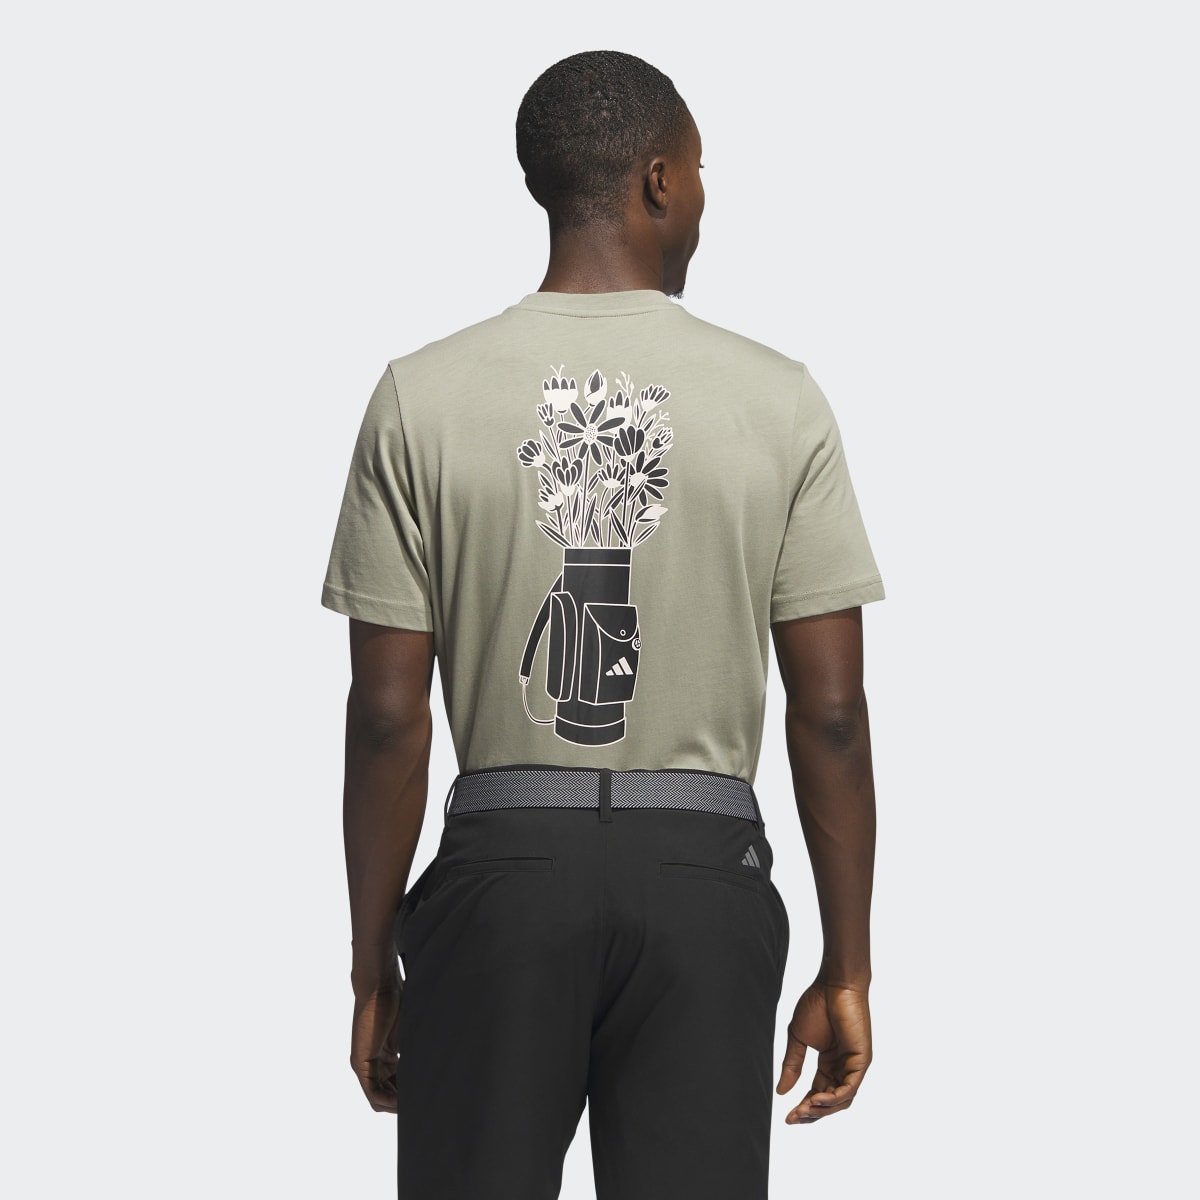 Adidas T-shirt de golf graphique. 4